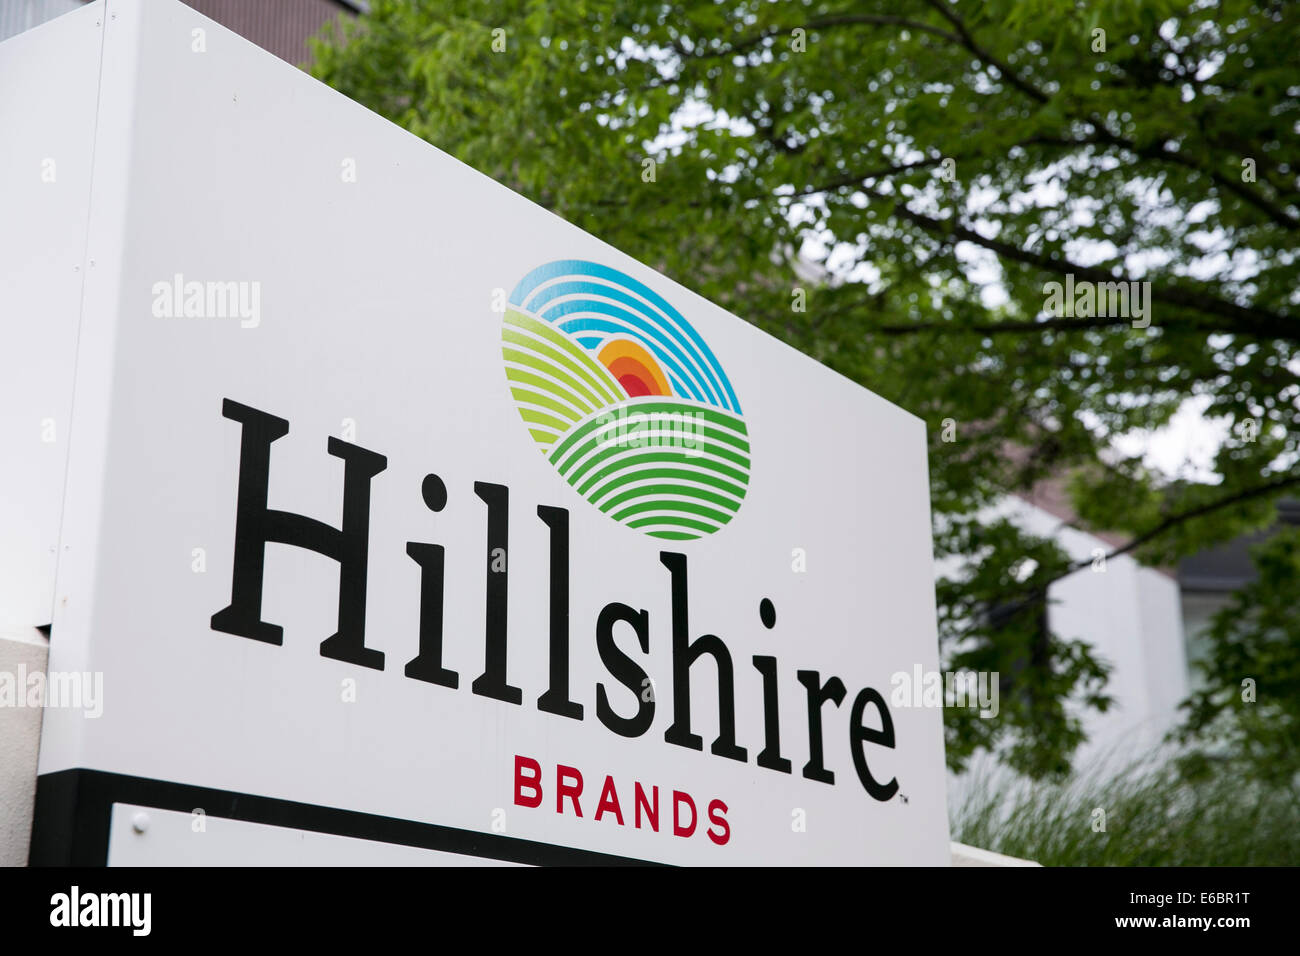 L'Hillshire Brands Innovation Centre à Downers Grove, Illinois. Banque D'Images